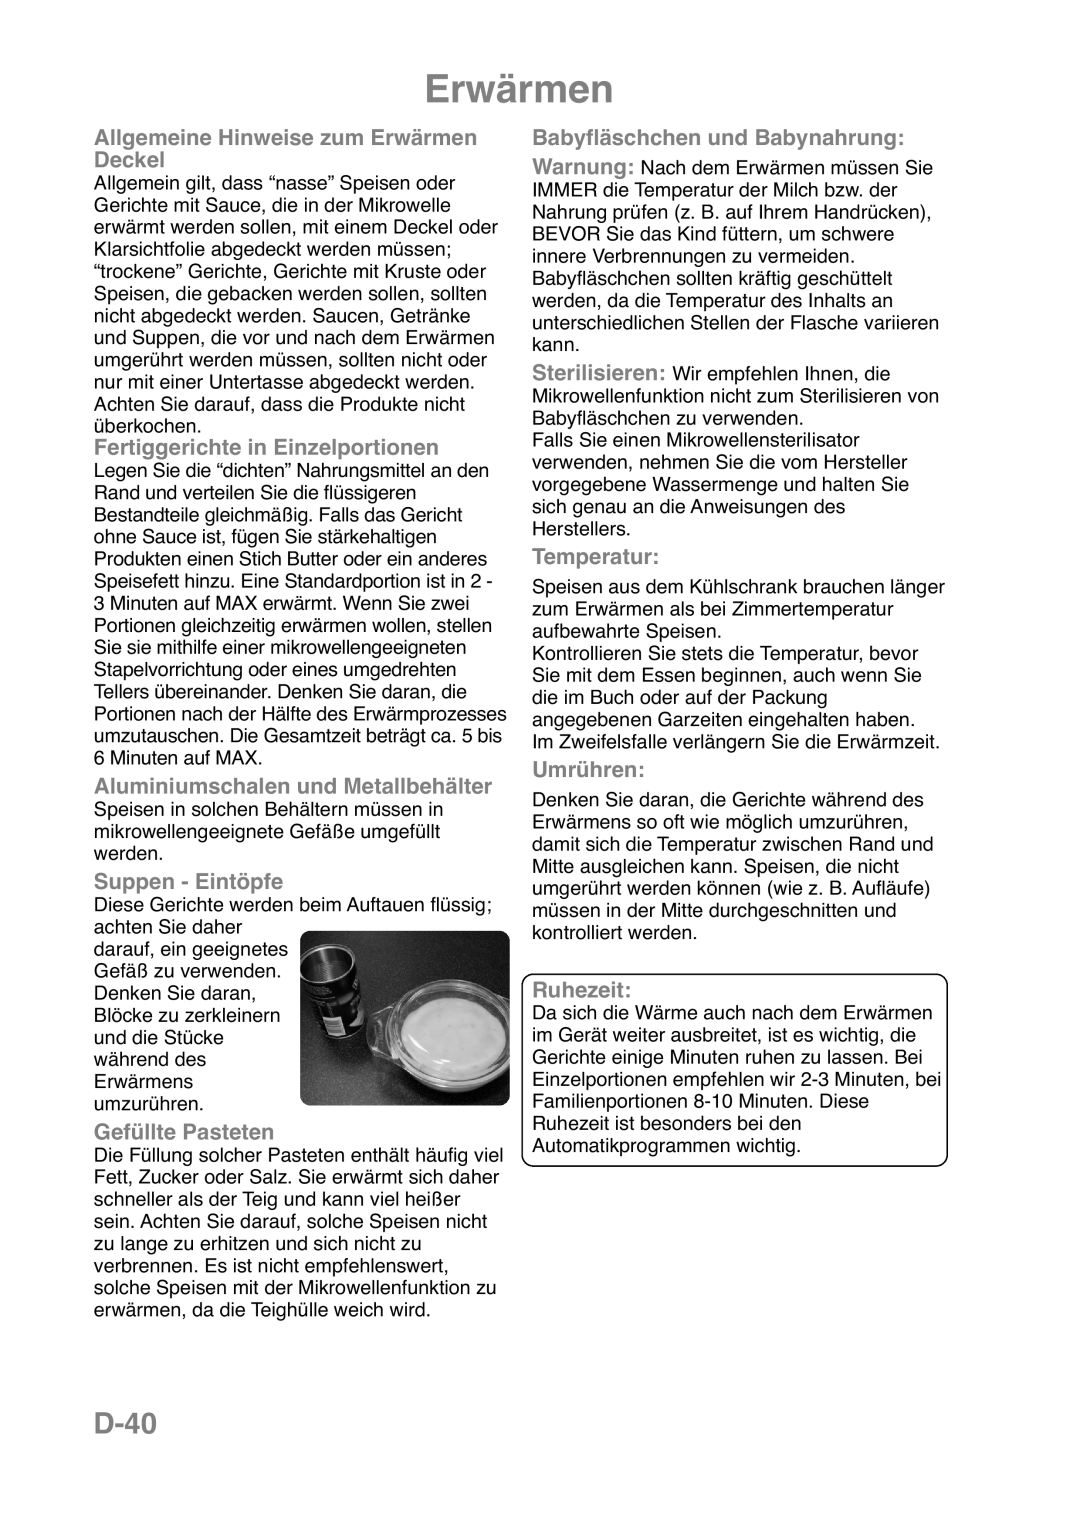 Panasonic NN-CT559W D-40, Allgemeine Hinweise zum Erwärmen Deckel, Fertiggerichte in Einzelportionen, Suppen - Eintöpfe 